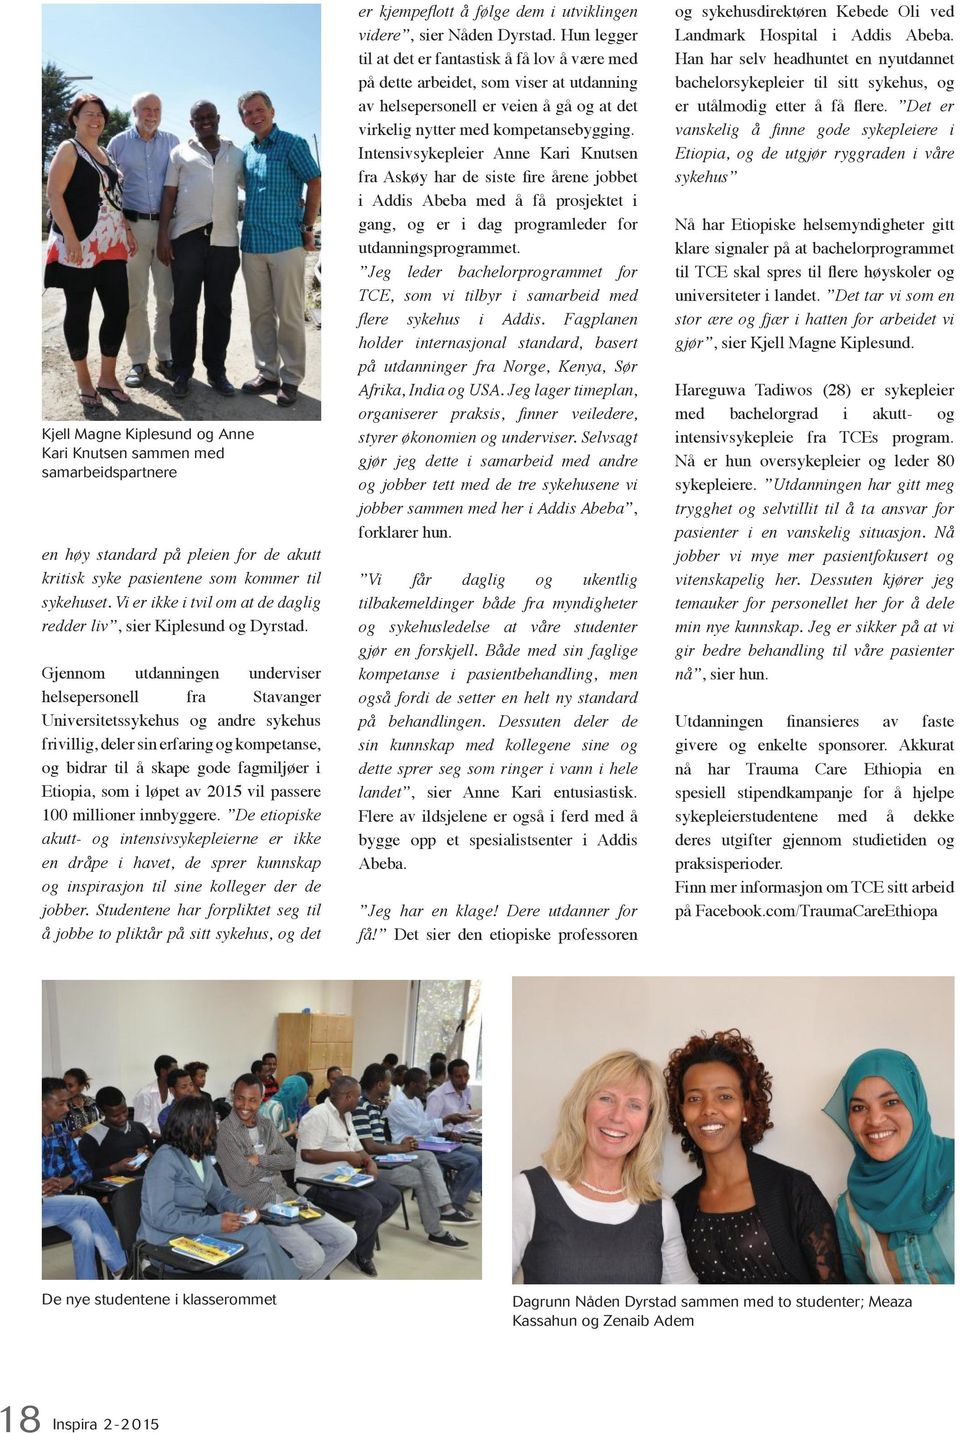 Gjennom utdanningen underviser helsepersonell fra Stavanger Universitetssykehus og andre sykehus frivillig, deler sin erfaring og kompetanse, og bidrar til å skape gode fagmiljøer i Etiopia, som i